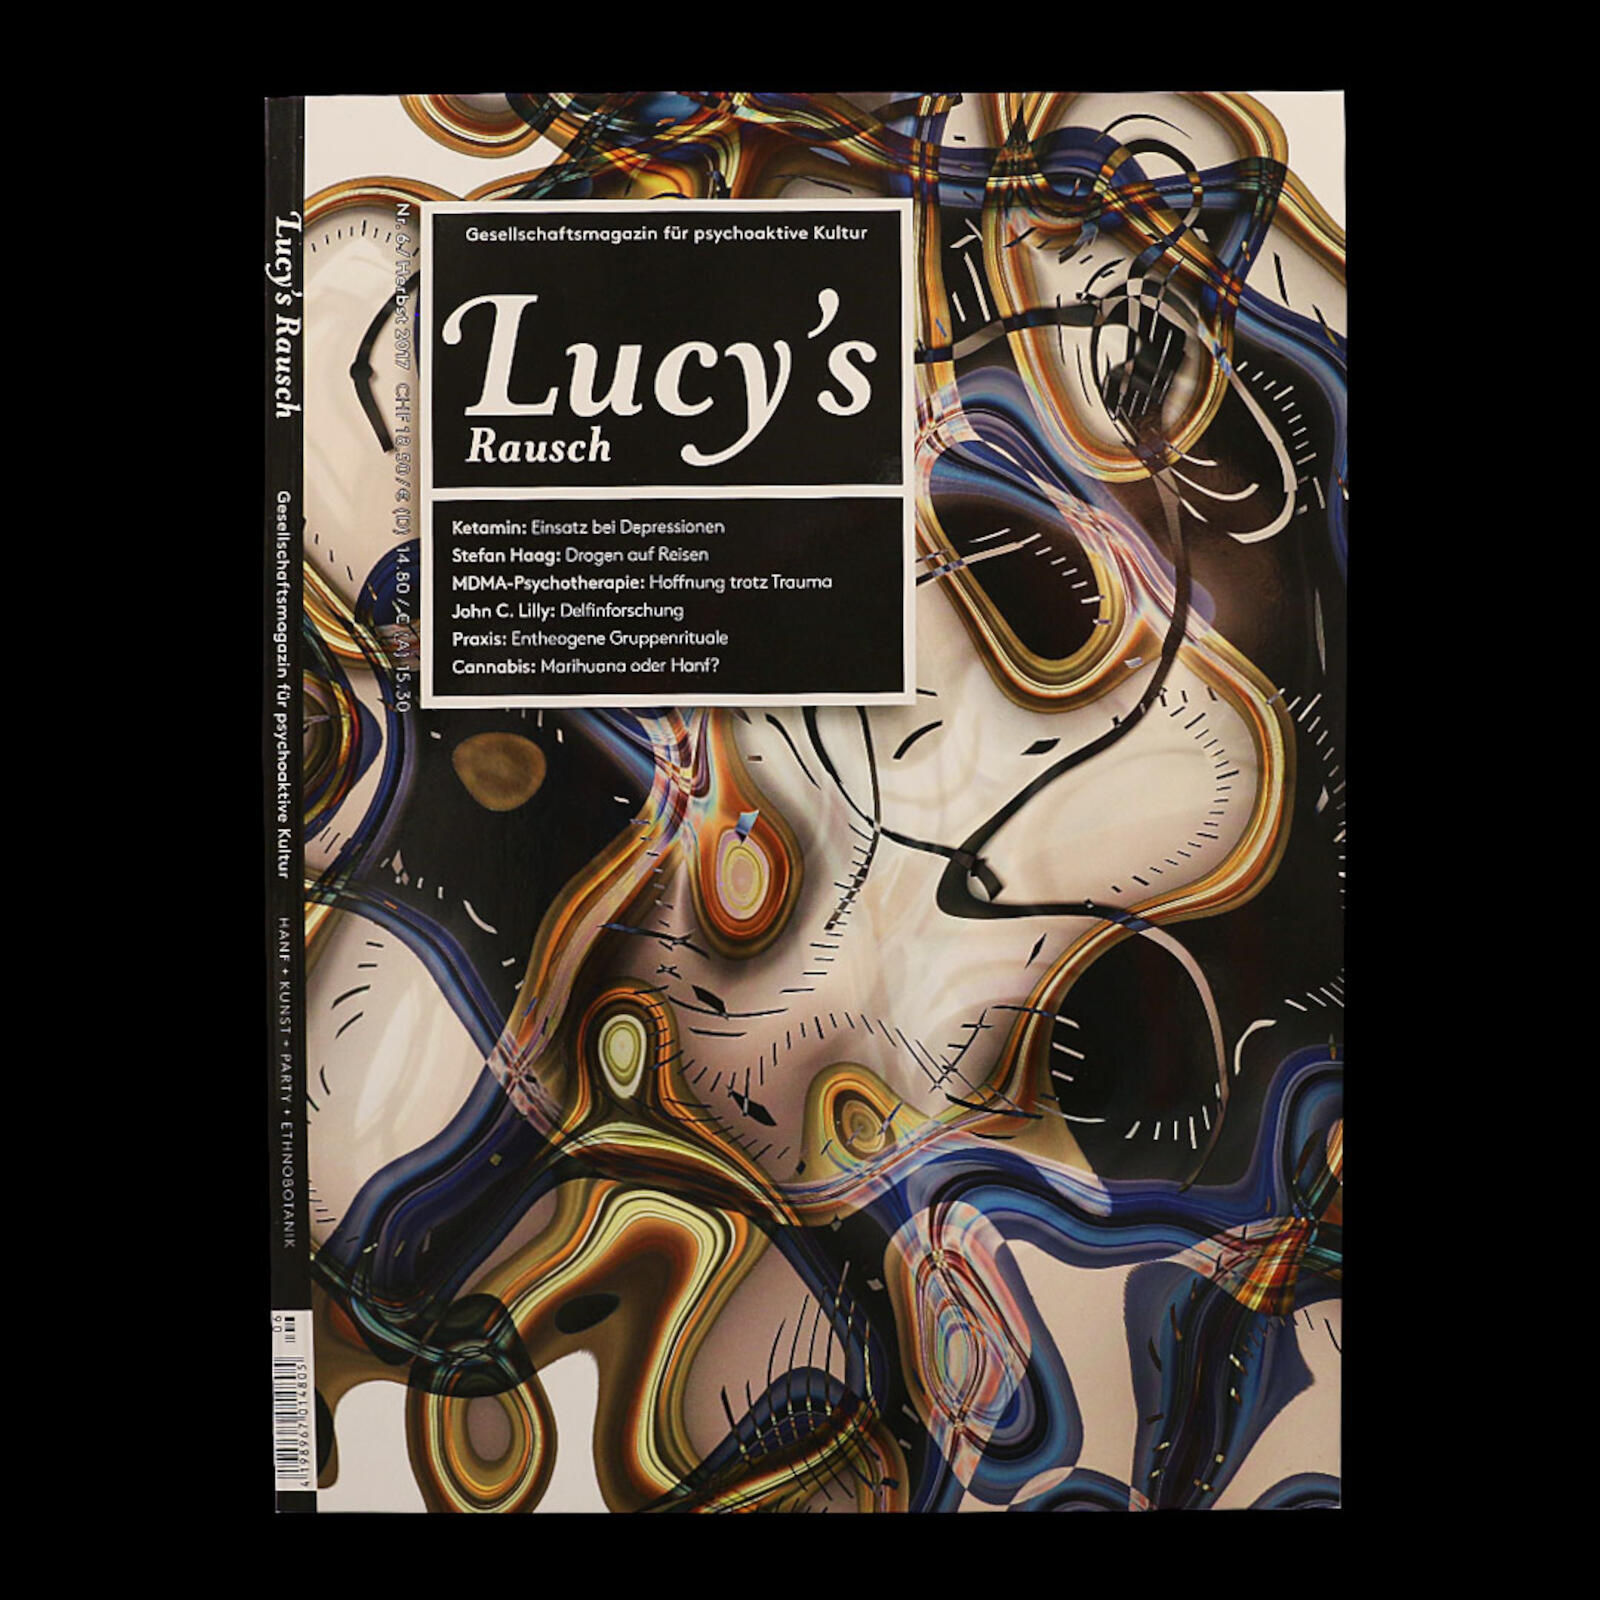 Lucy's Rausch | Volume 6